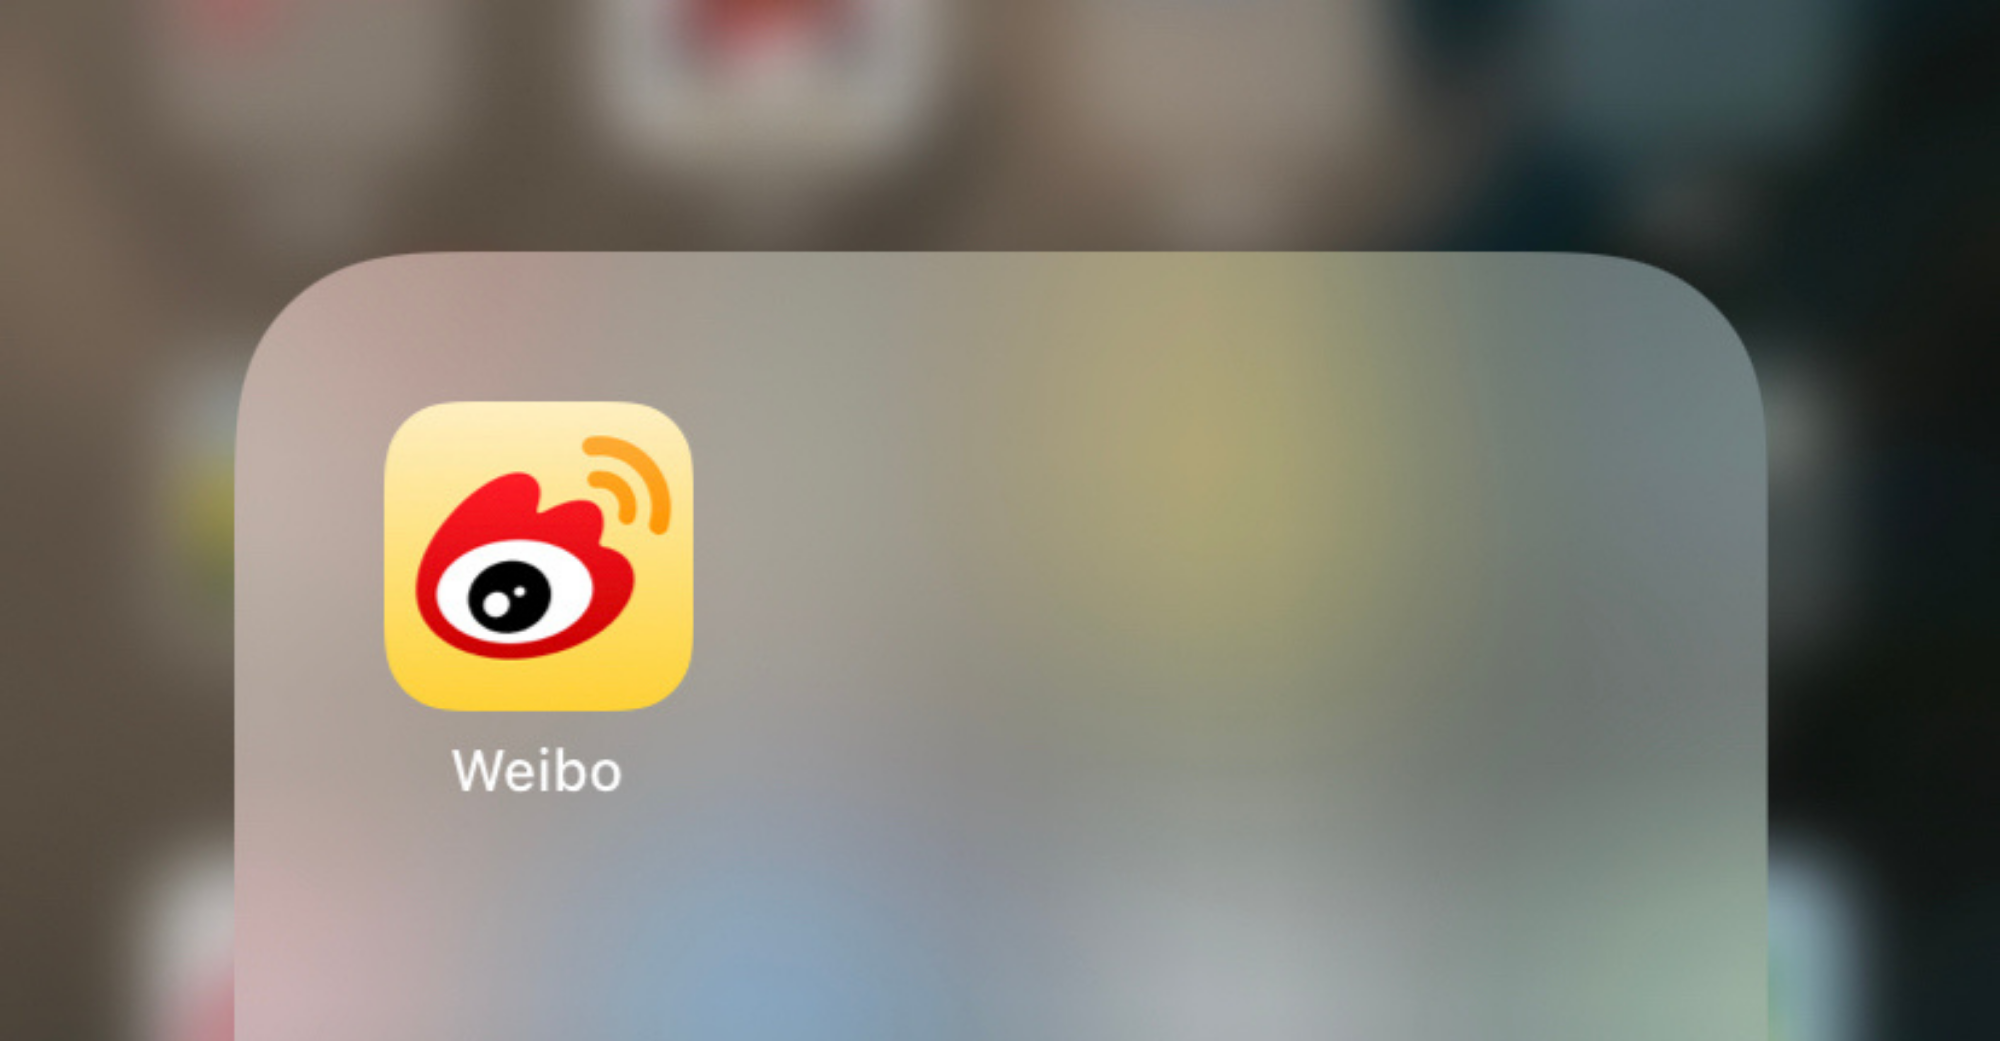 Weibo သည် ကမ္ဘာအနှံ့ တွင် ရှယ်ယာ ၁၁ သန်း ရောင်း ချပြီး ရှယ်ယာ တစ်စု လျှင်ဒေါ်လာ ၄၉. ၇၅ ထက်မပို ပါ